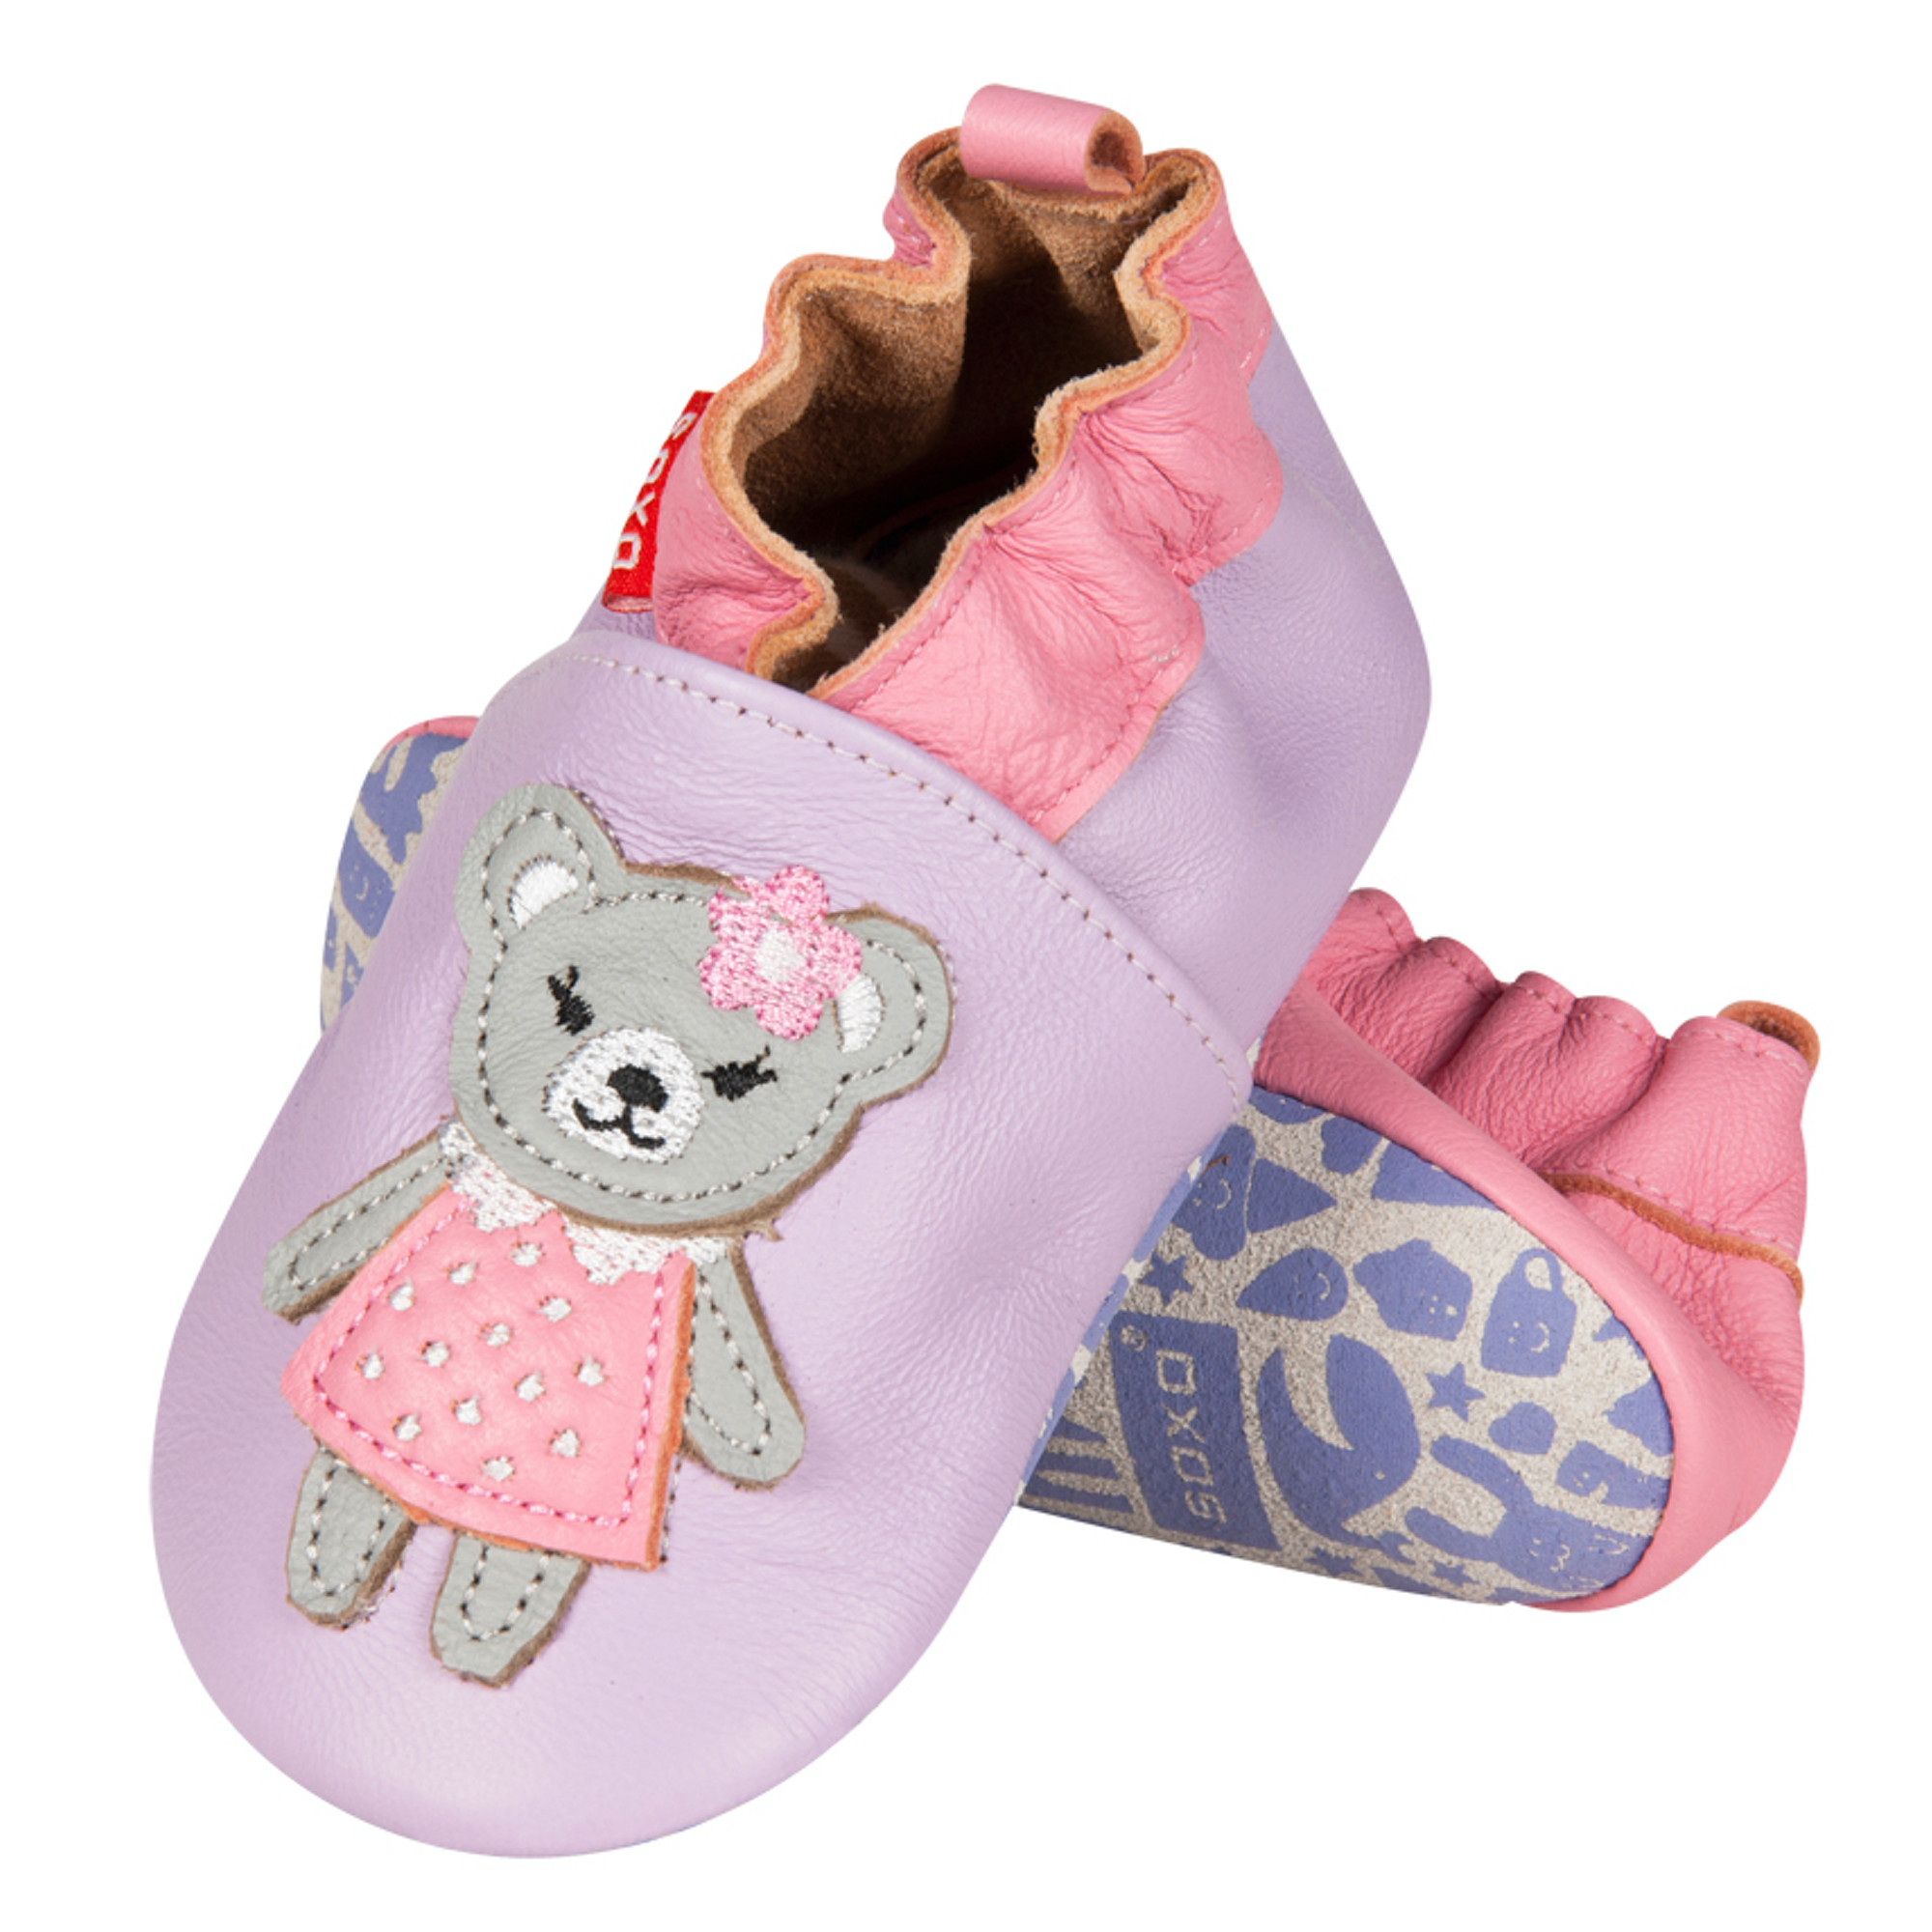 Chaussures bébé - Chaussure bébé souple - Chausson bébé - Chaussures bébé  personnalisées